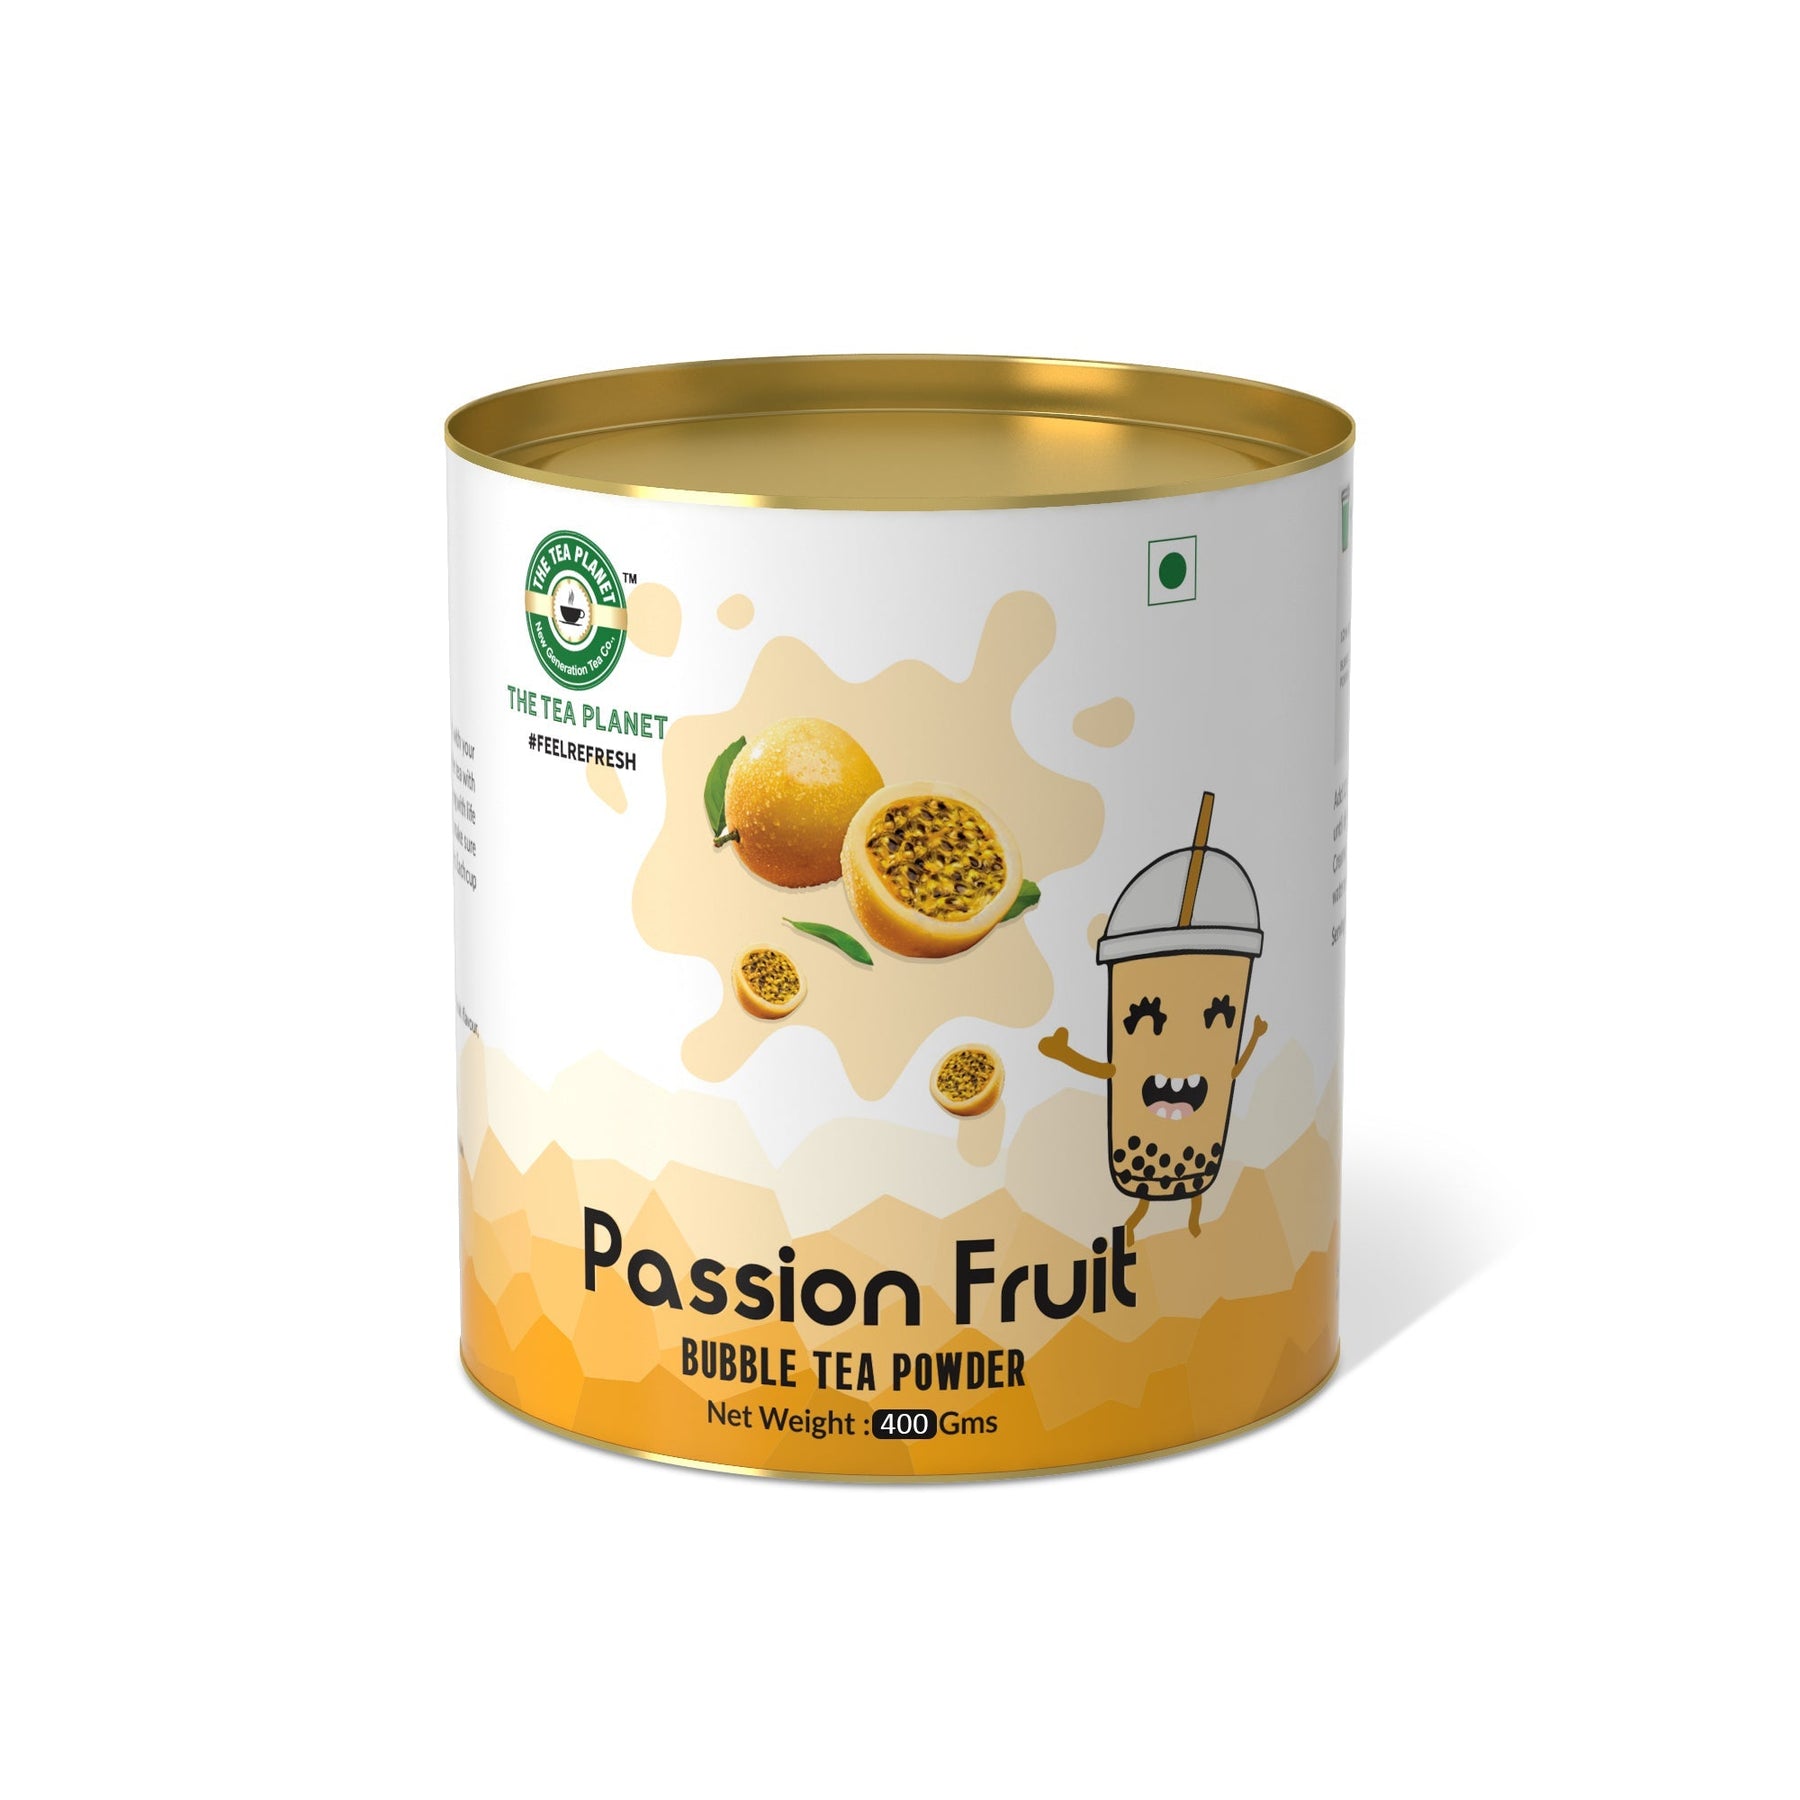 Passion Fruit Bubble Tea Premix - 400 gms